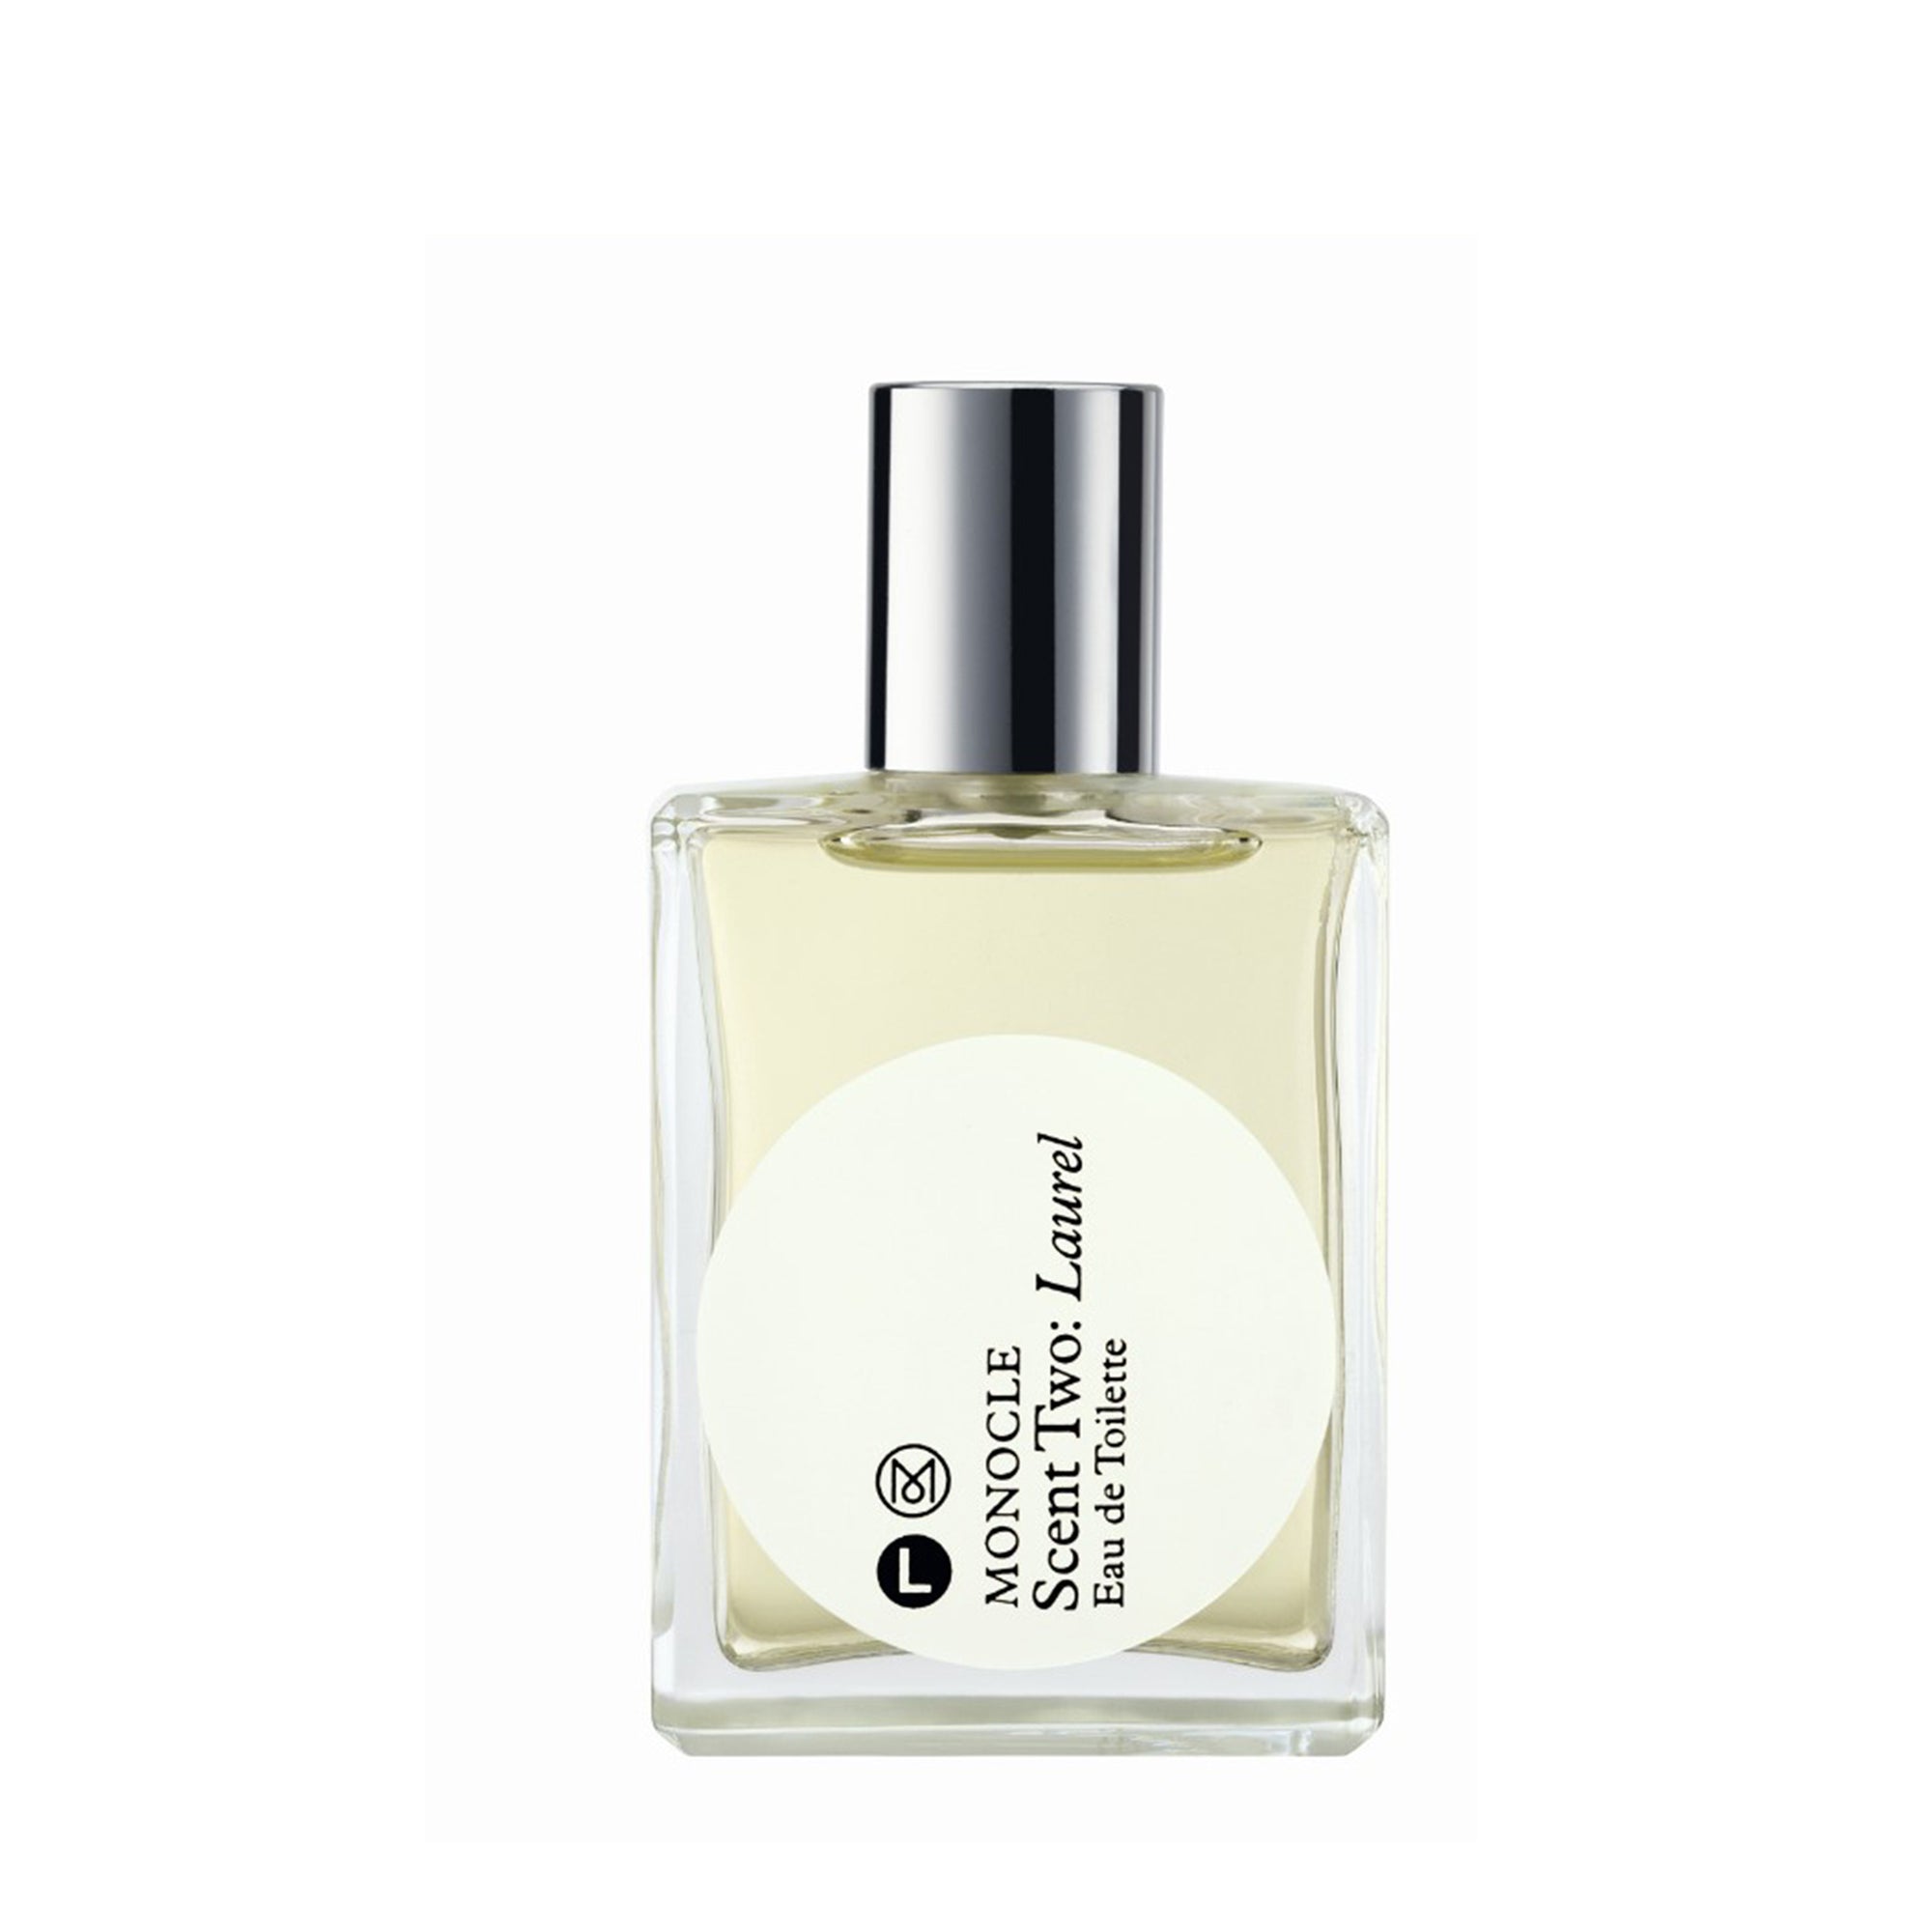 CDG Parfum - Monocle Scent Two: Laurel Eau de Toilette - (50ml natural spray) view 1